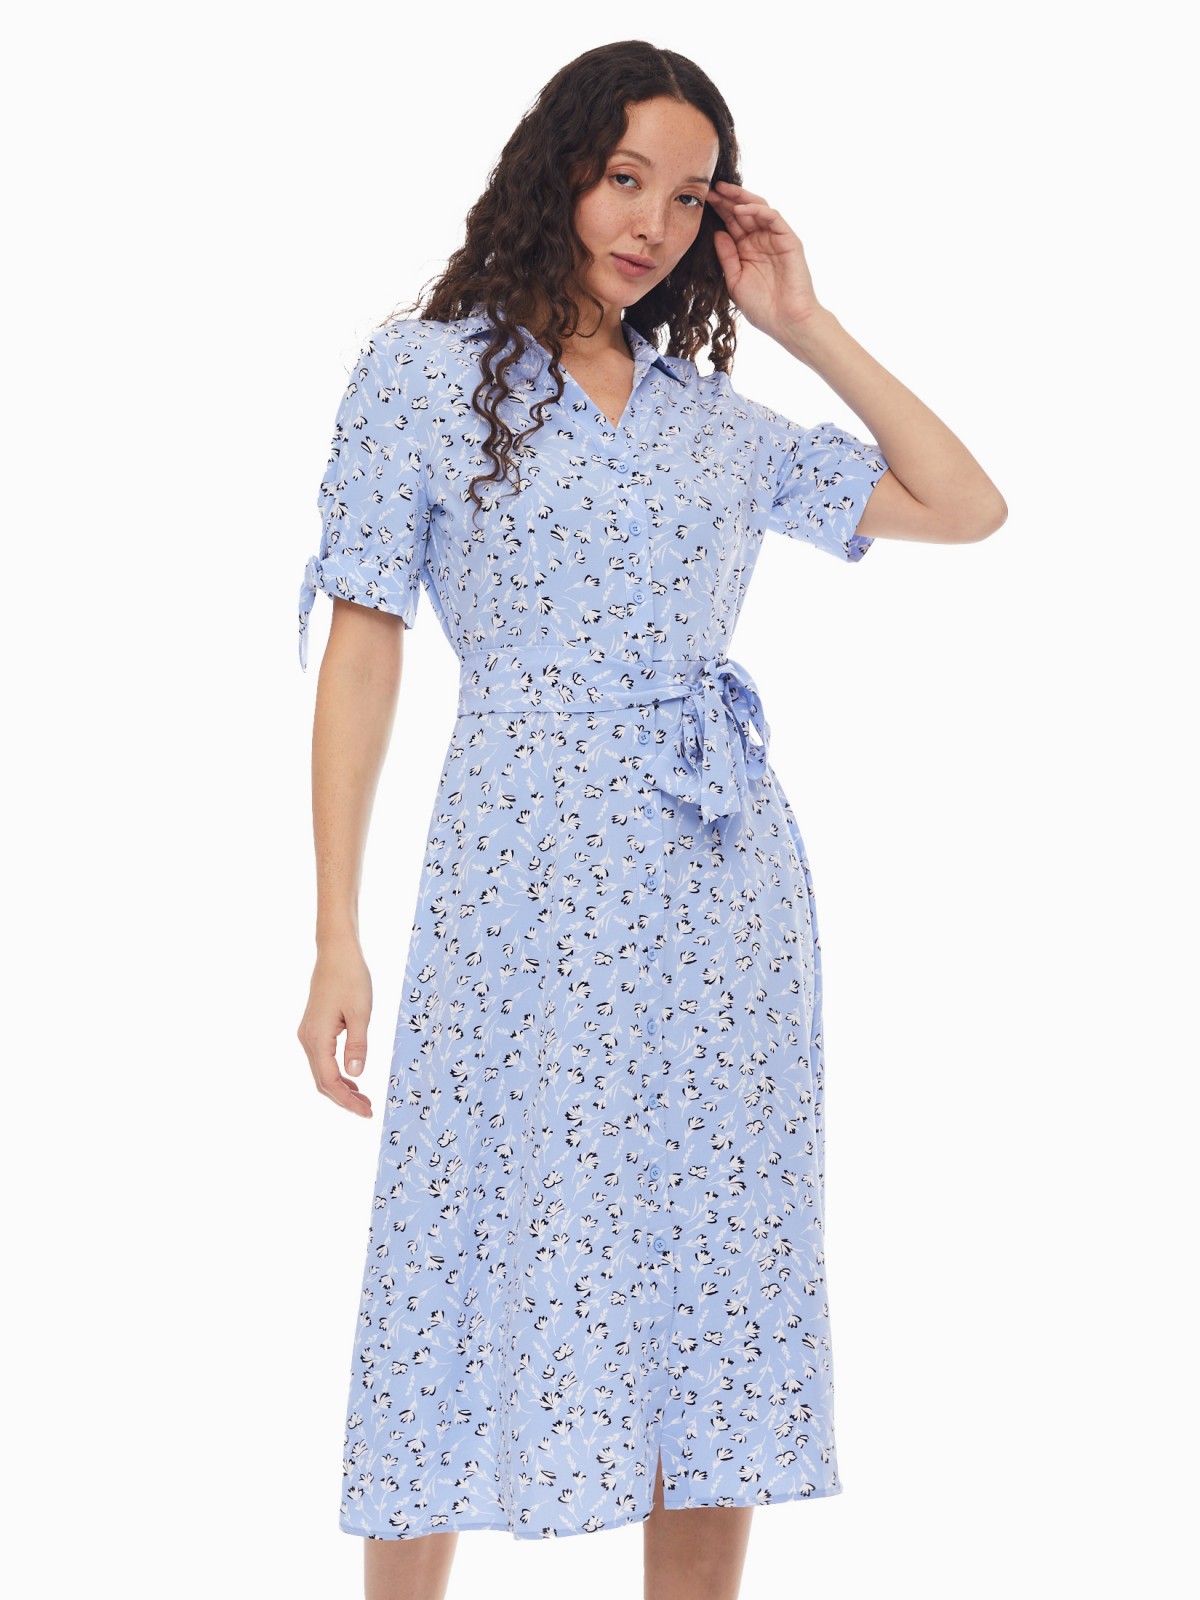 Платье-рубашка с поясом и акцентными короткими рукавами zolla 024138240412, цвет светло-голубой, размер XS - фото 1